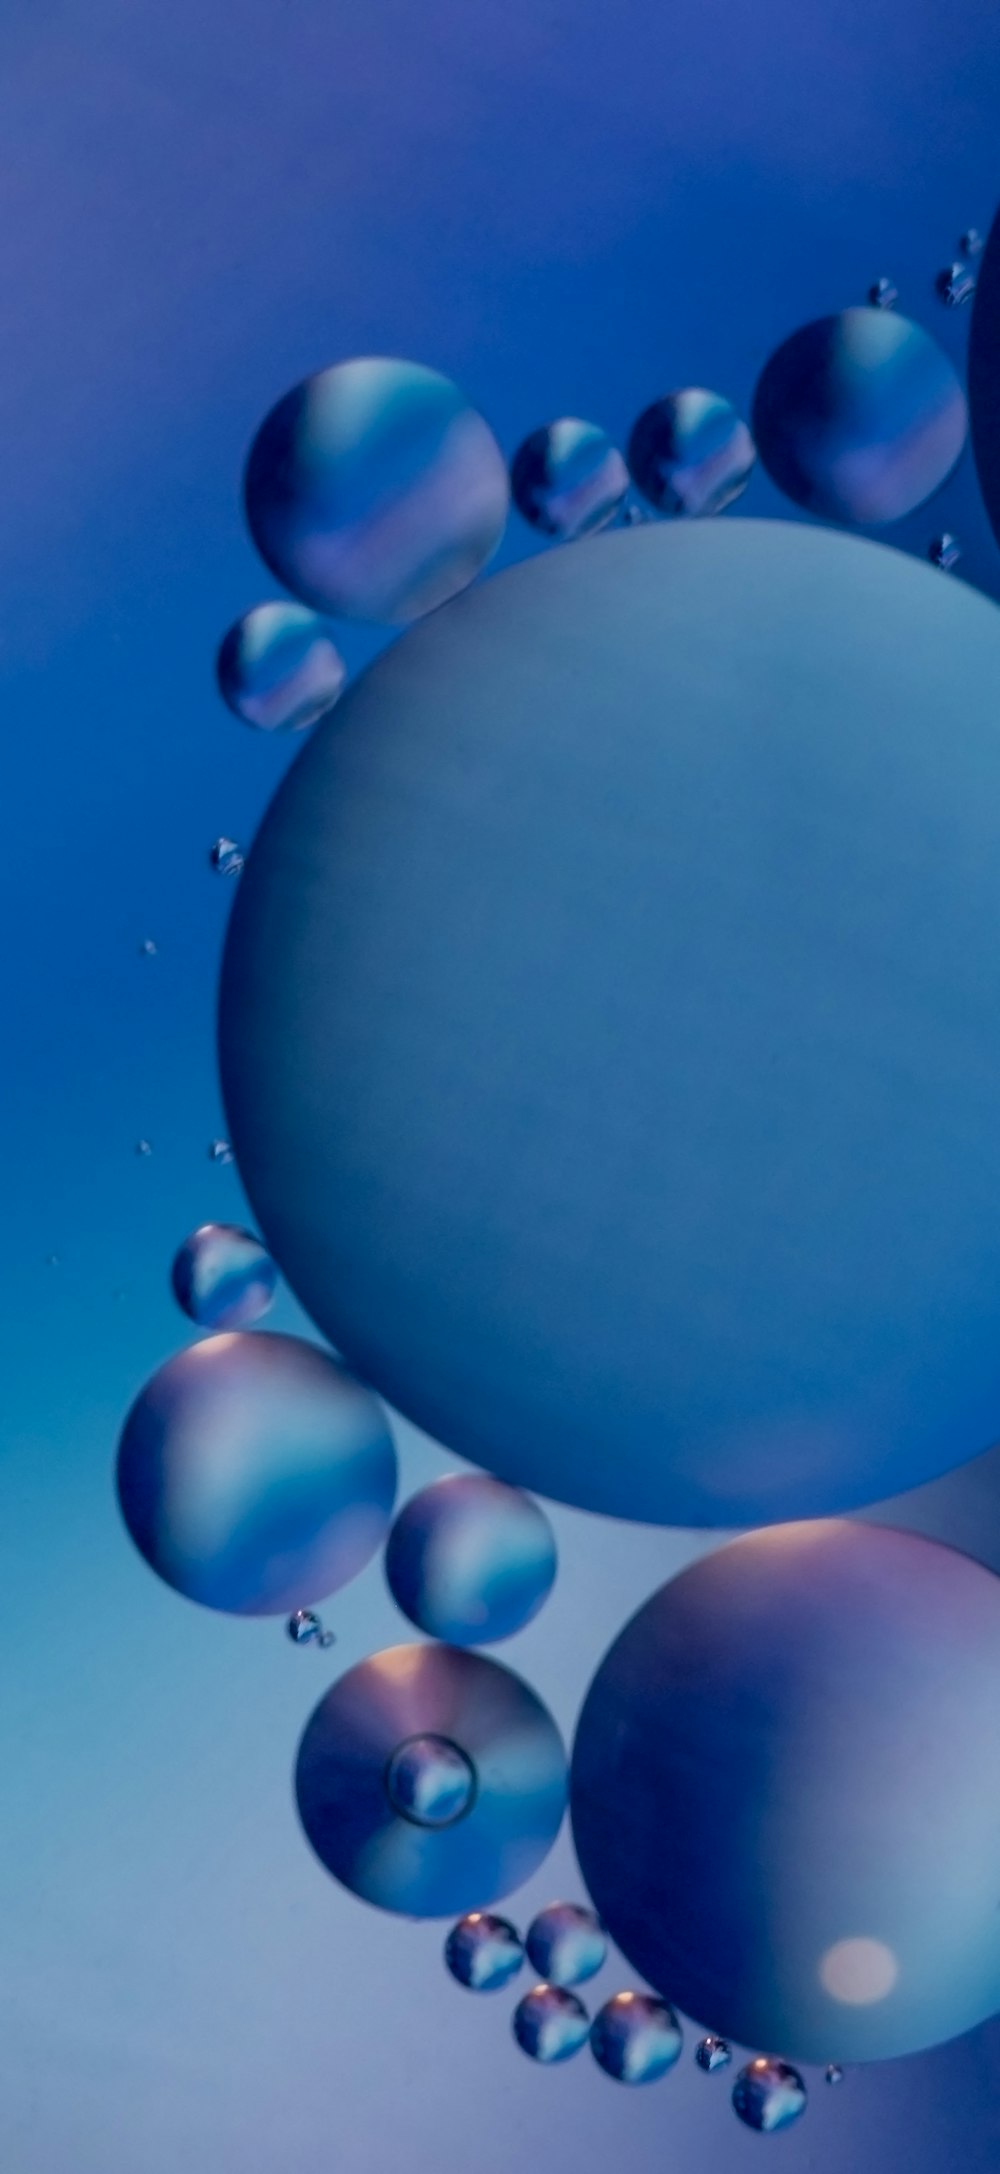 globos azules y blancos con fondo azul